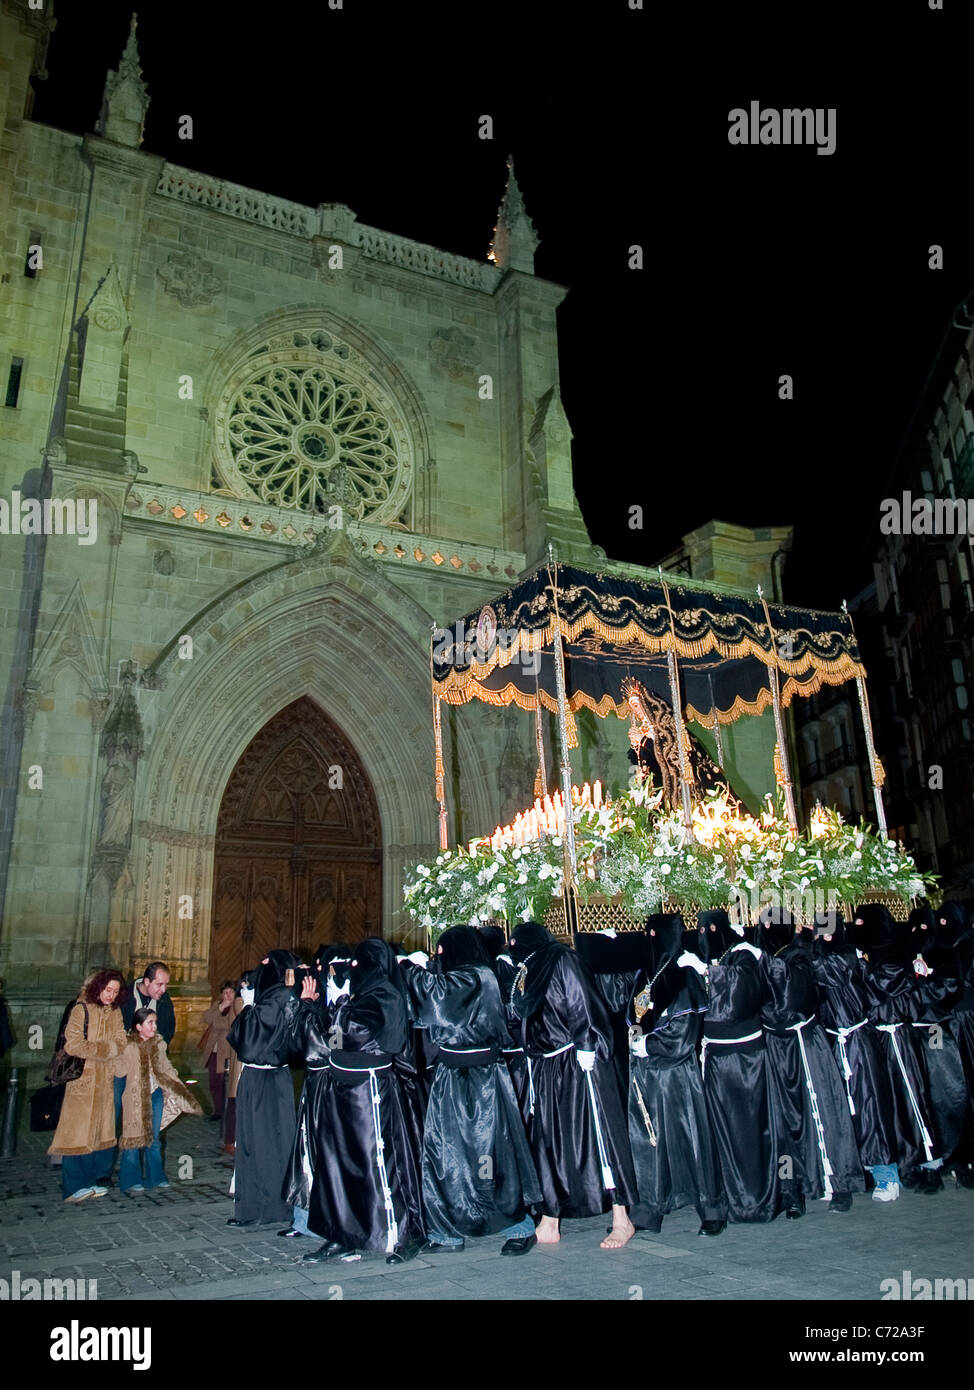 Jungfrau-Bilbao Leidenschaft religiösen Überzeugungen Woche heilige Prozession Kunst traditionelle vertikale Euskadi baskischen Saint Jaques-Art Stockfoto